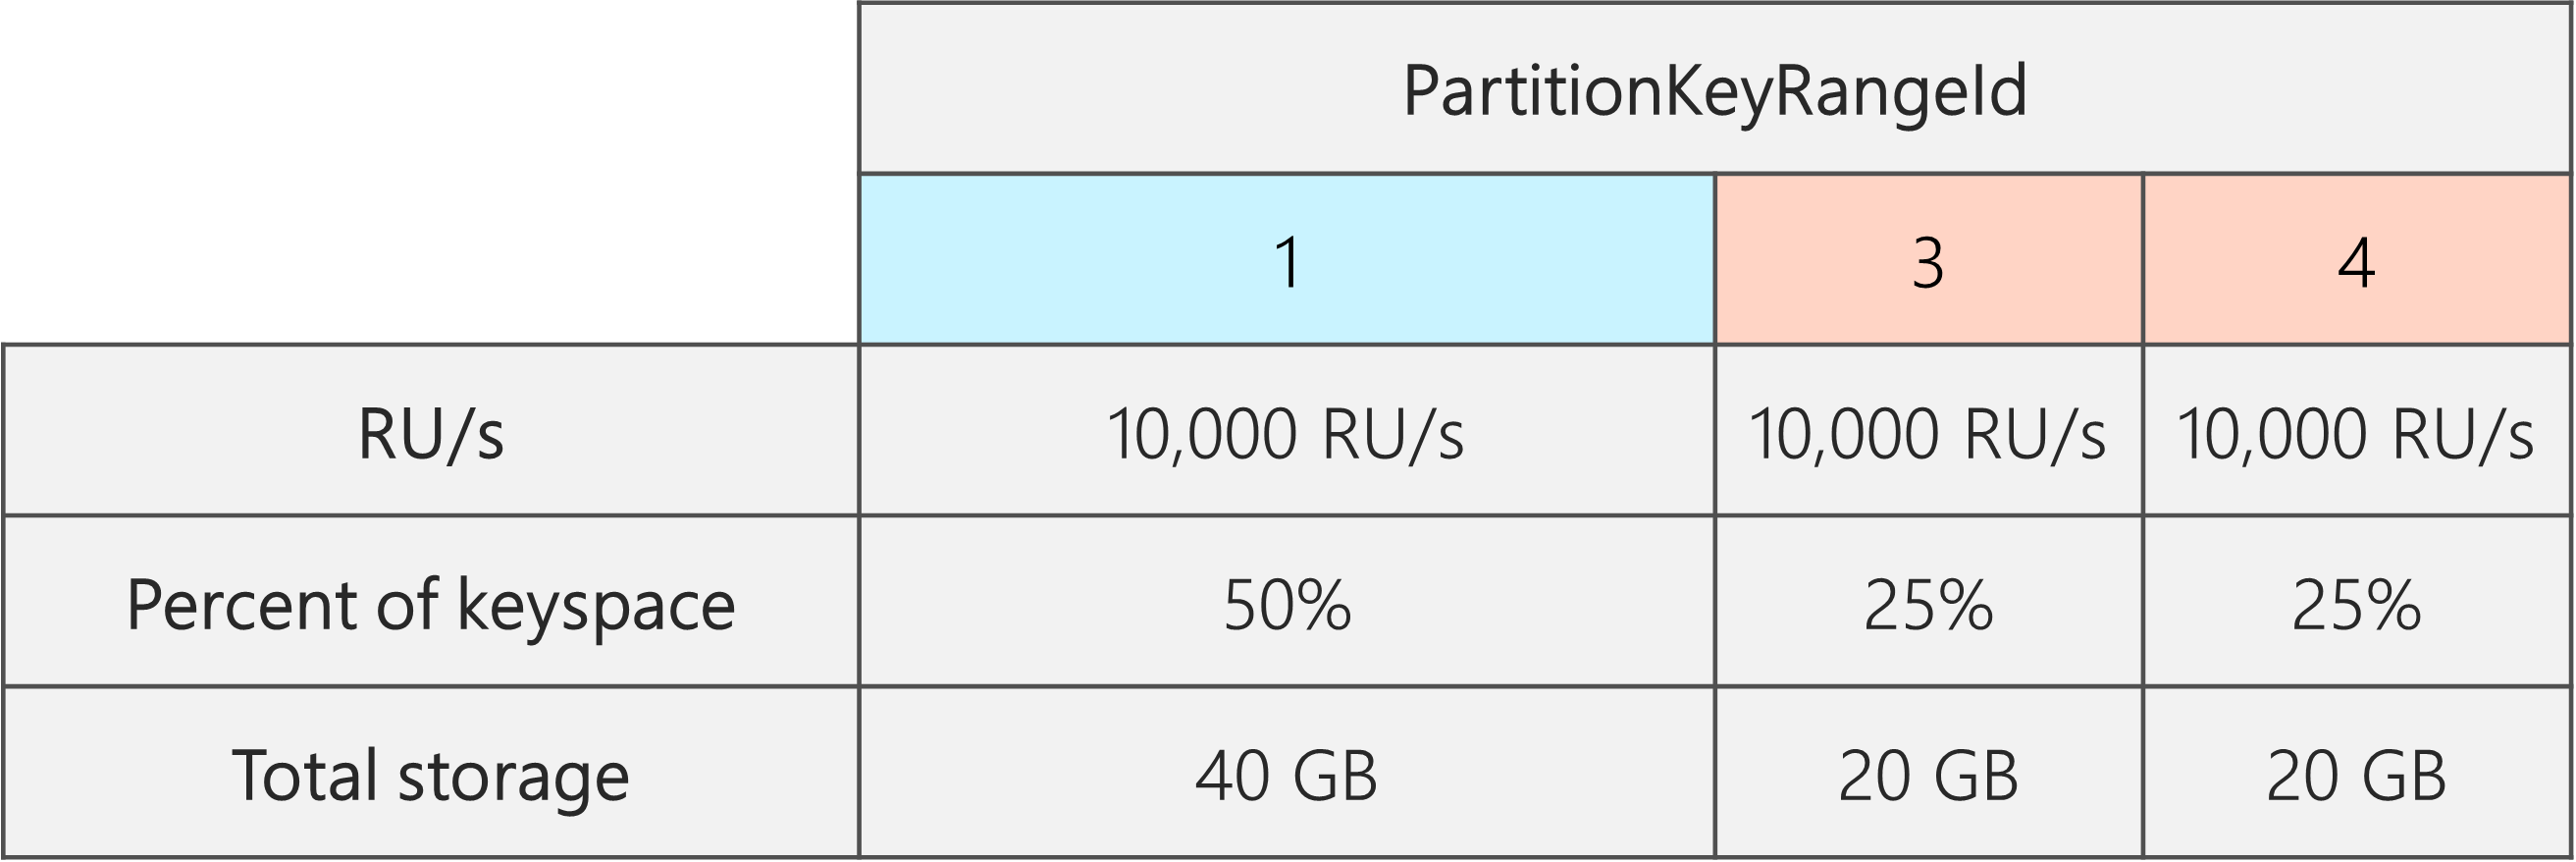 Após a divisão, há três PartitionKeyRangeIds, cada uma com 10.000 RU/s. No entanto, um dos PartitionKeyRangeIds tem 50% do keyspace total (40 GB), enquanto dois dos PartitionKeyRangeIds têm 25% do keyspace total (20 GB)